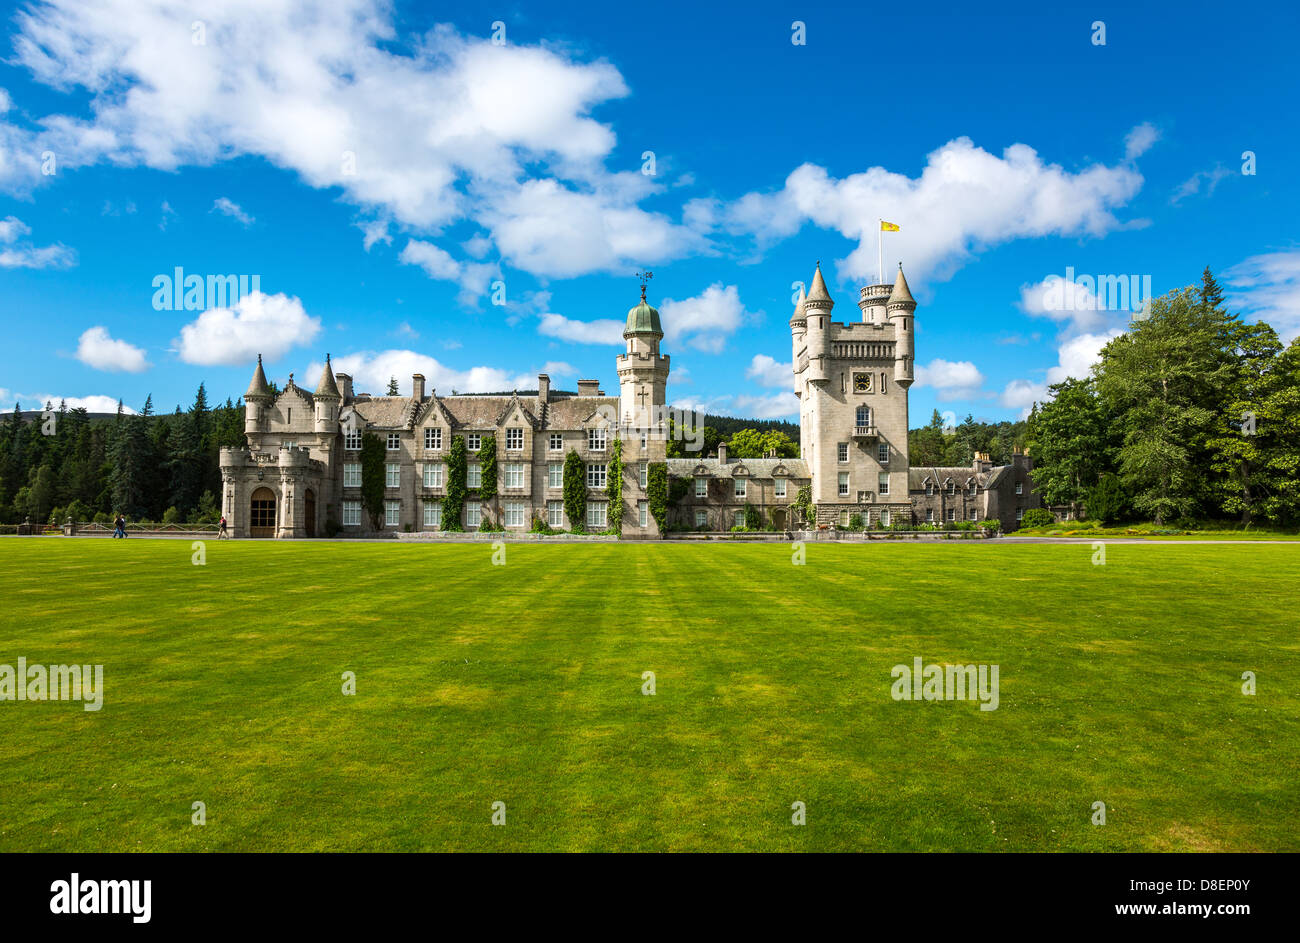 Gran Bretaña, Escocia, aberdeenshire, el castillo de Balmoral, residencia de verano de la familia real británica. Foto de stock